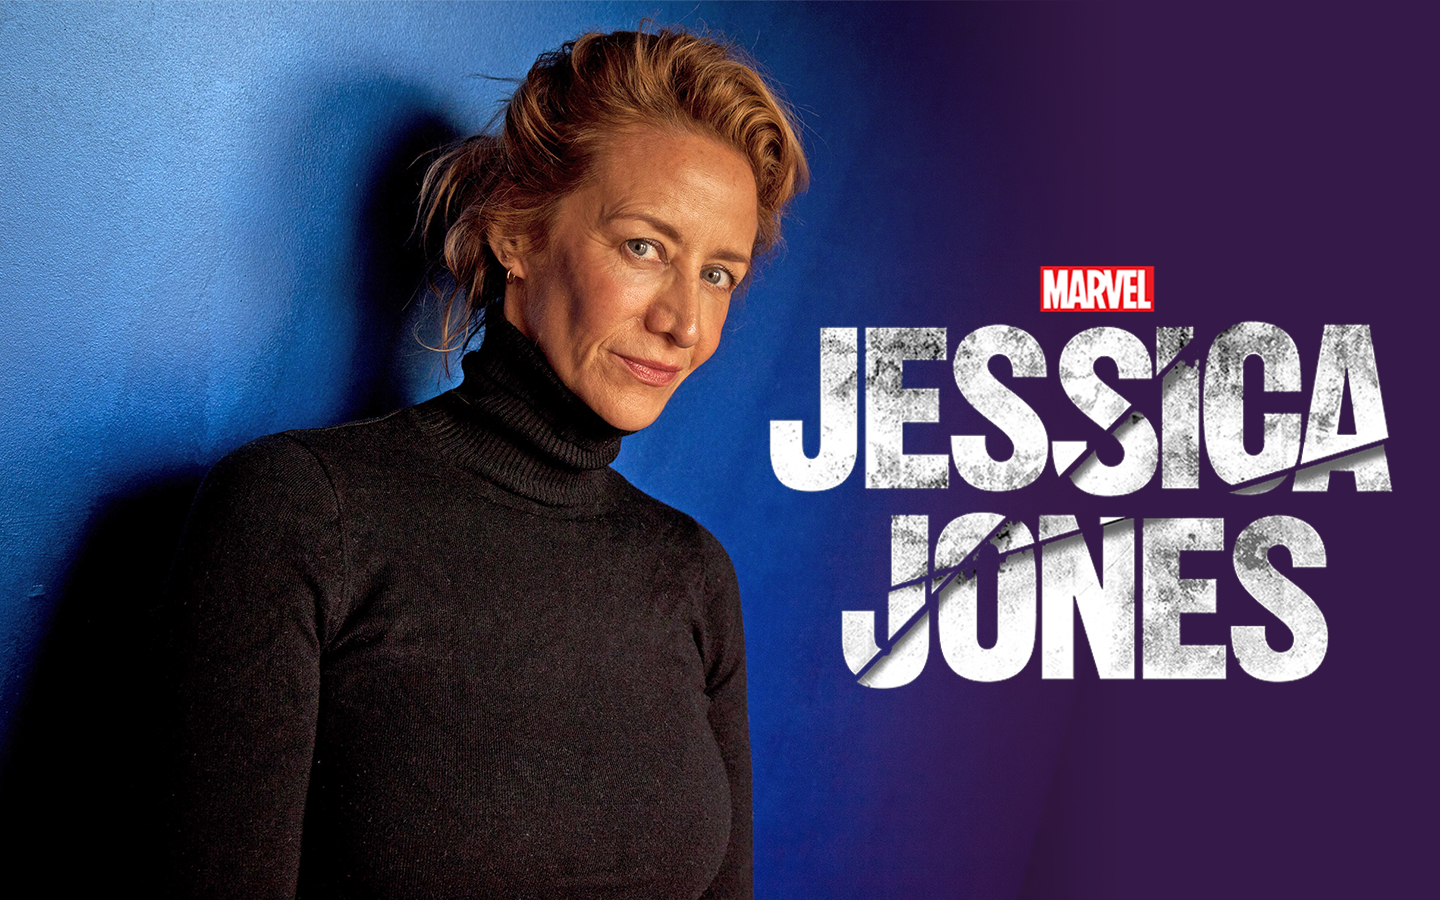 Award-winning actress Janet McTeer Joins Marvel’s Jessica Jones